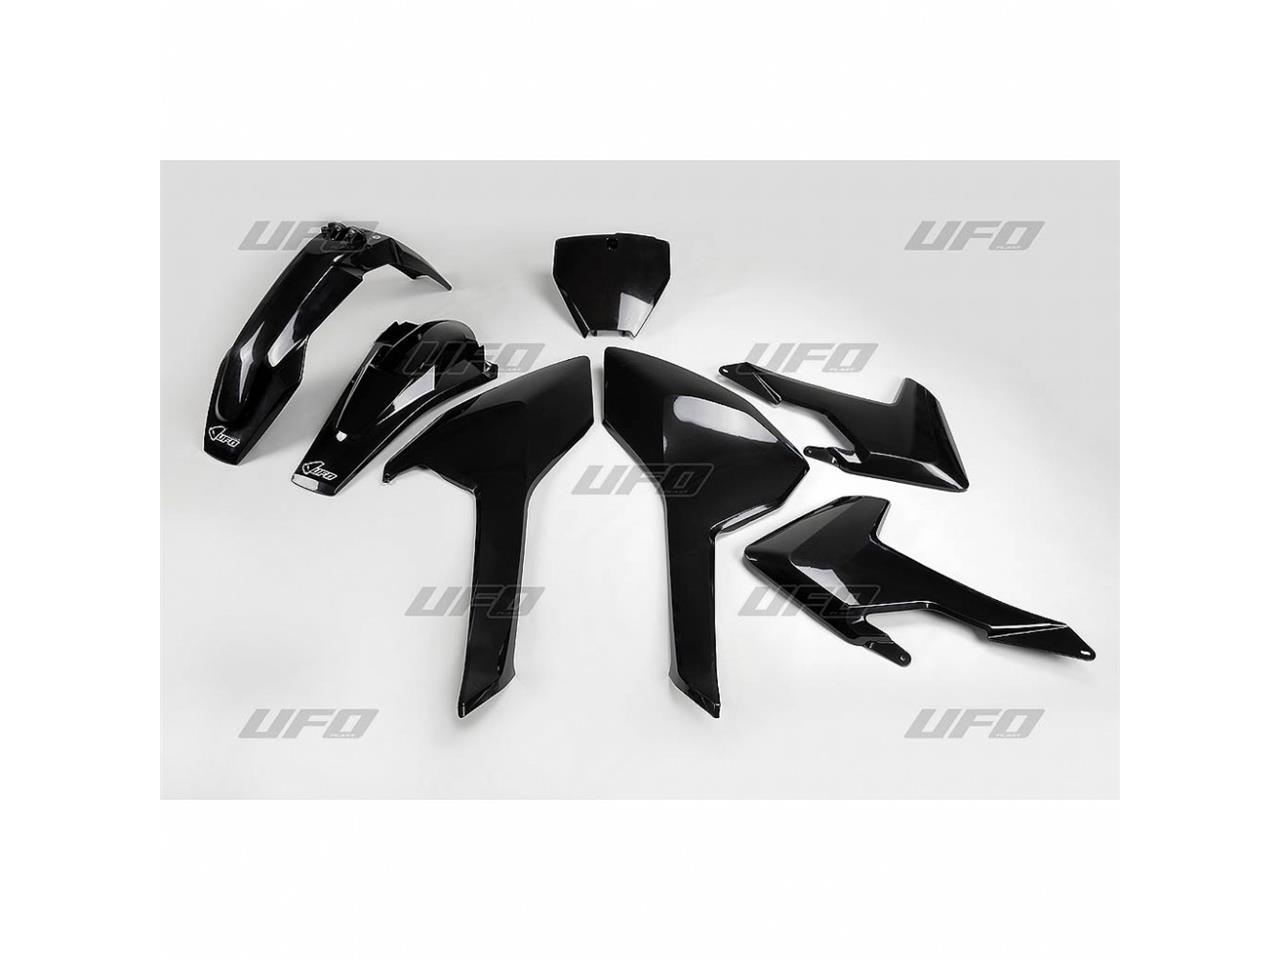 Kit plastique marque UFO noir